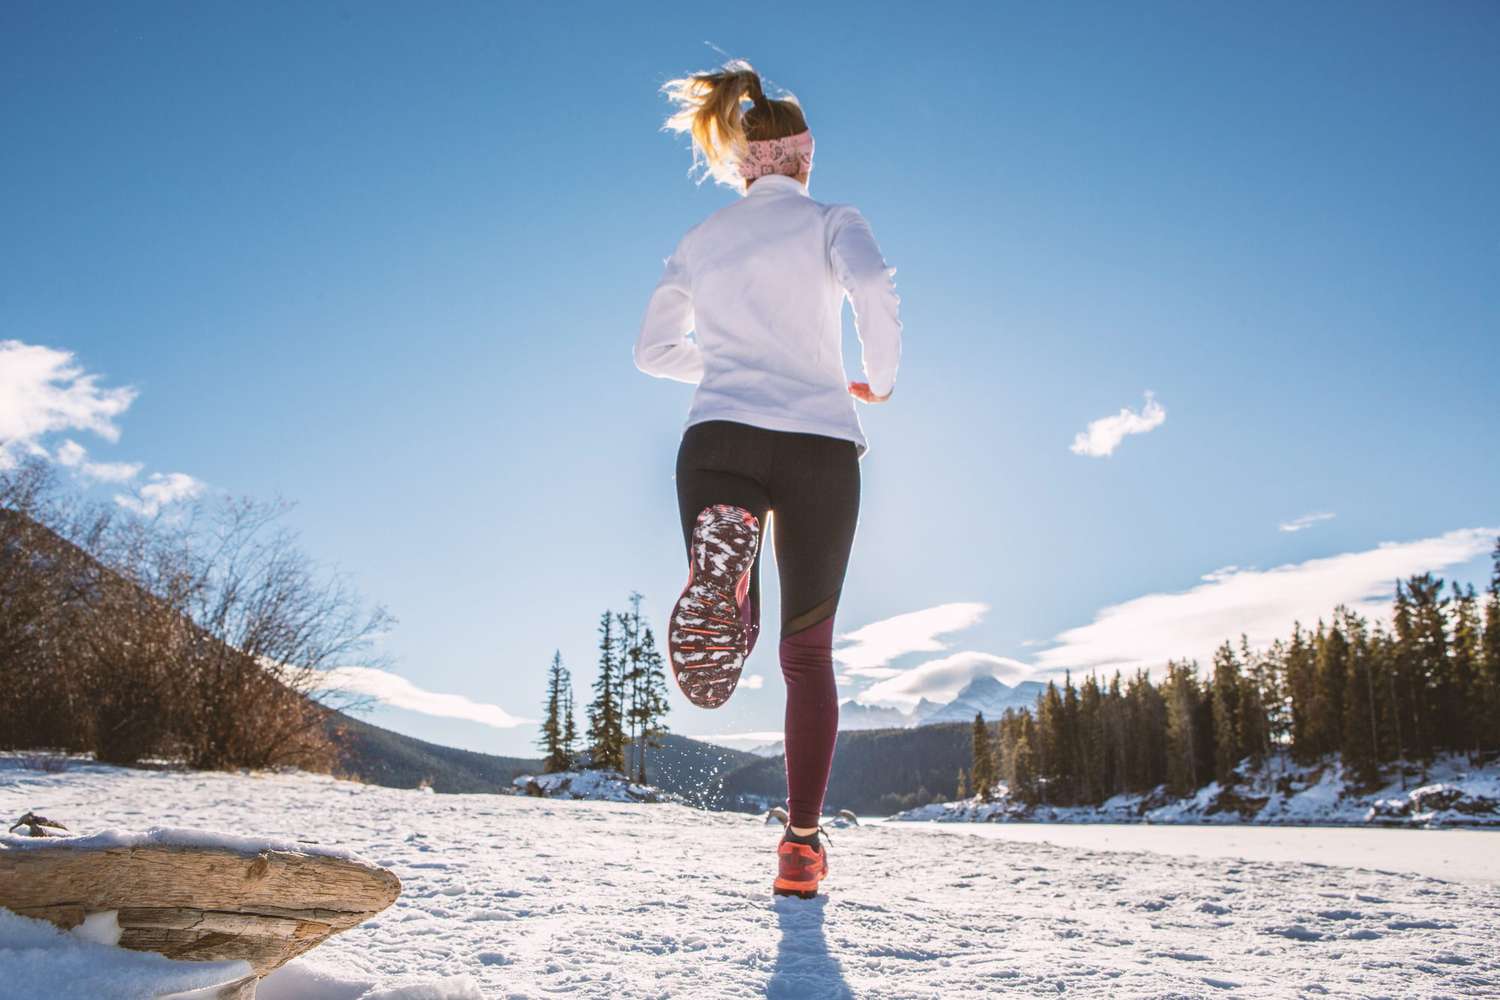 HLV cá nhân chia sẻ 6 lý do tập thể dục trong mùa đông giúp sống lâu hơn, ai lười tập sẽ tiếc vô cùng- Ảnh 3.